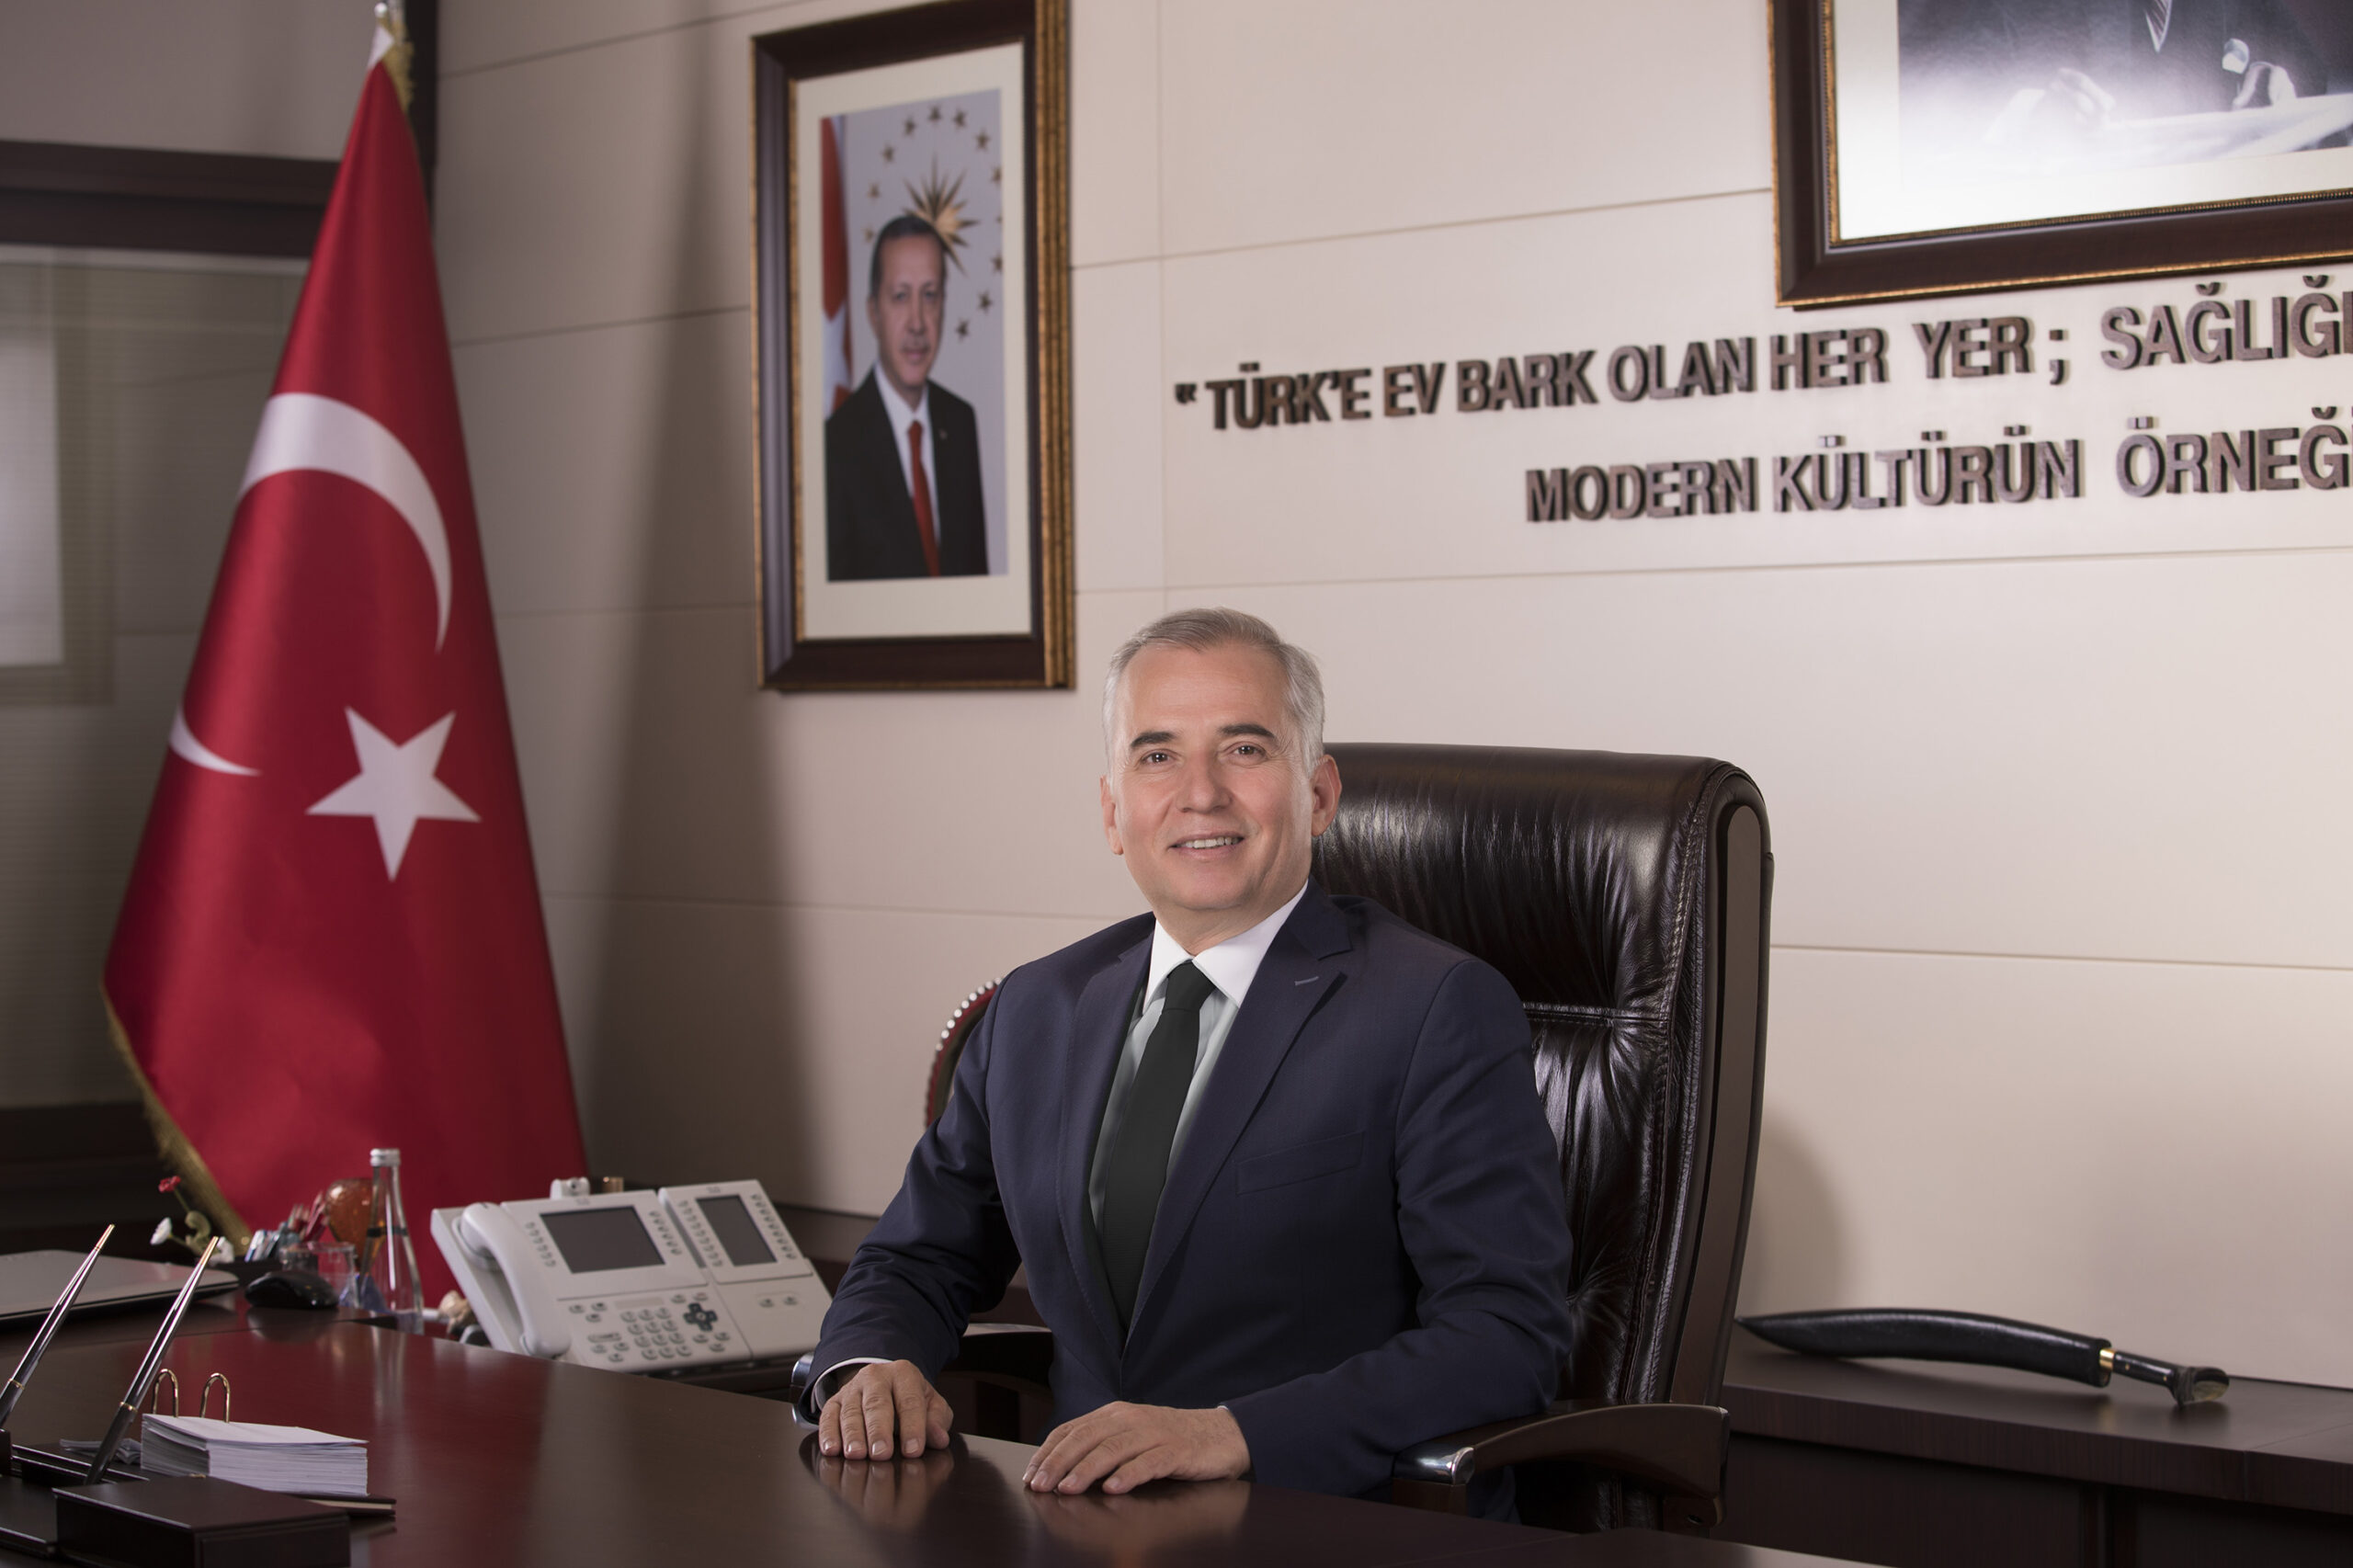 Denizli Buyuksehir Belediye Baskani Osman Zolan 1 1 scaled - Başkan Osman Zolan’dan 24 Temmuz Basın Bayramı mesajı